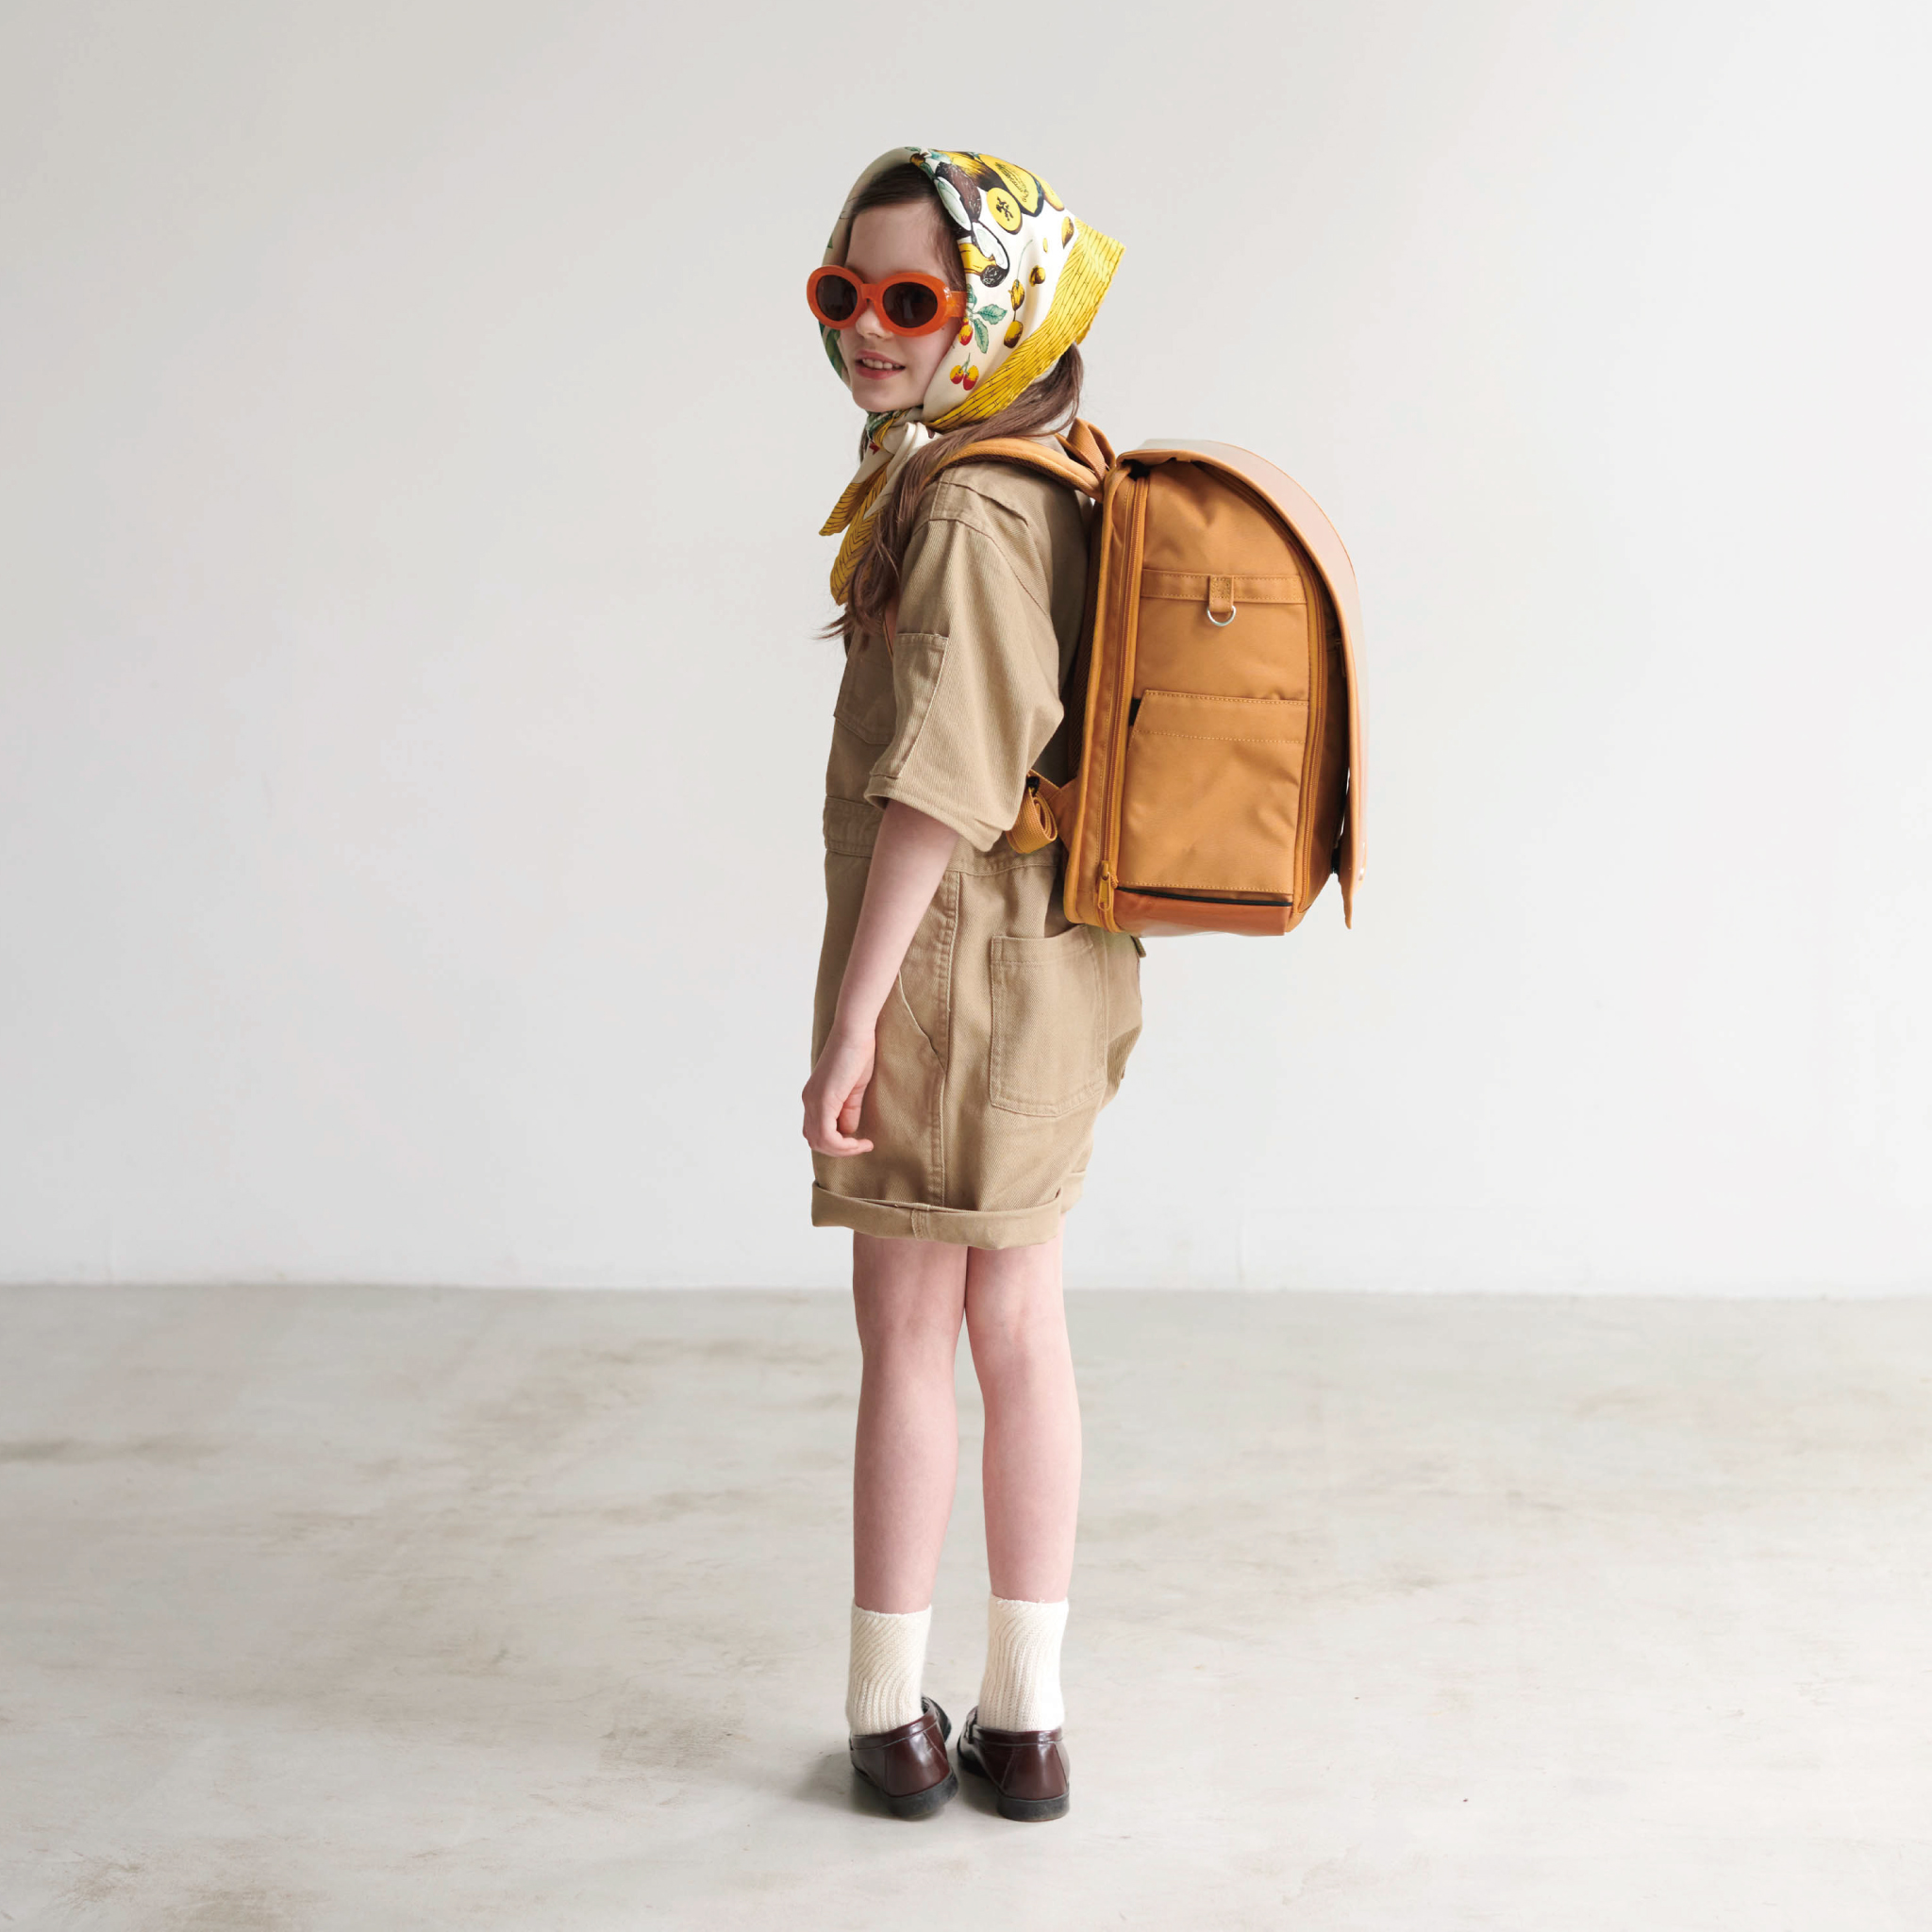 【自由テーマ】環境にも子どもにも優しい新時代のスクールバッグ「NuLAND」